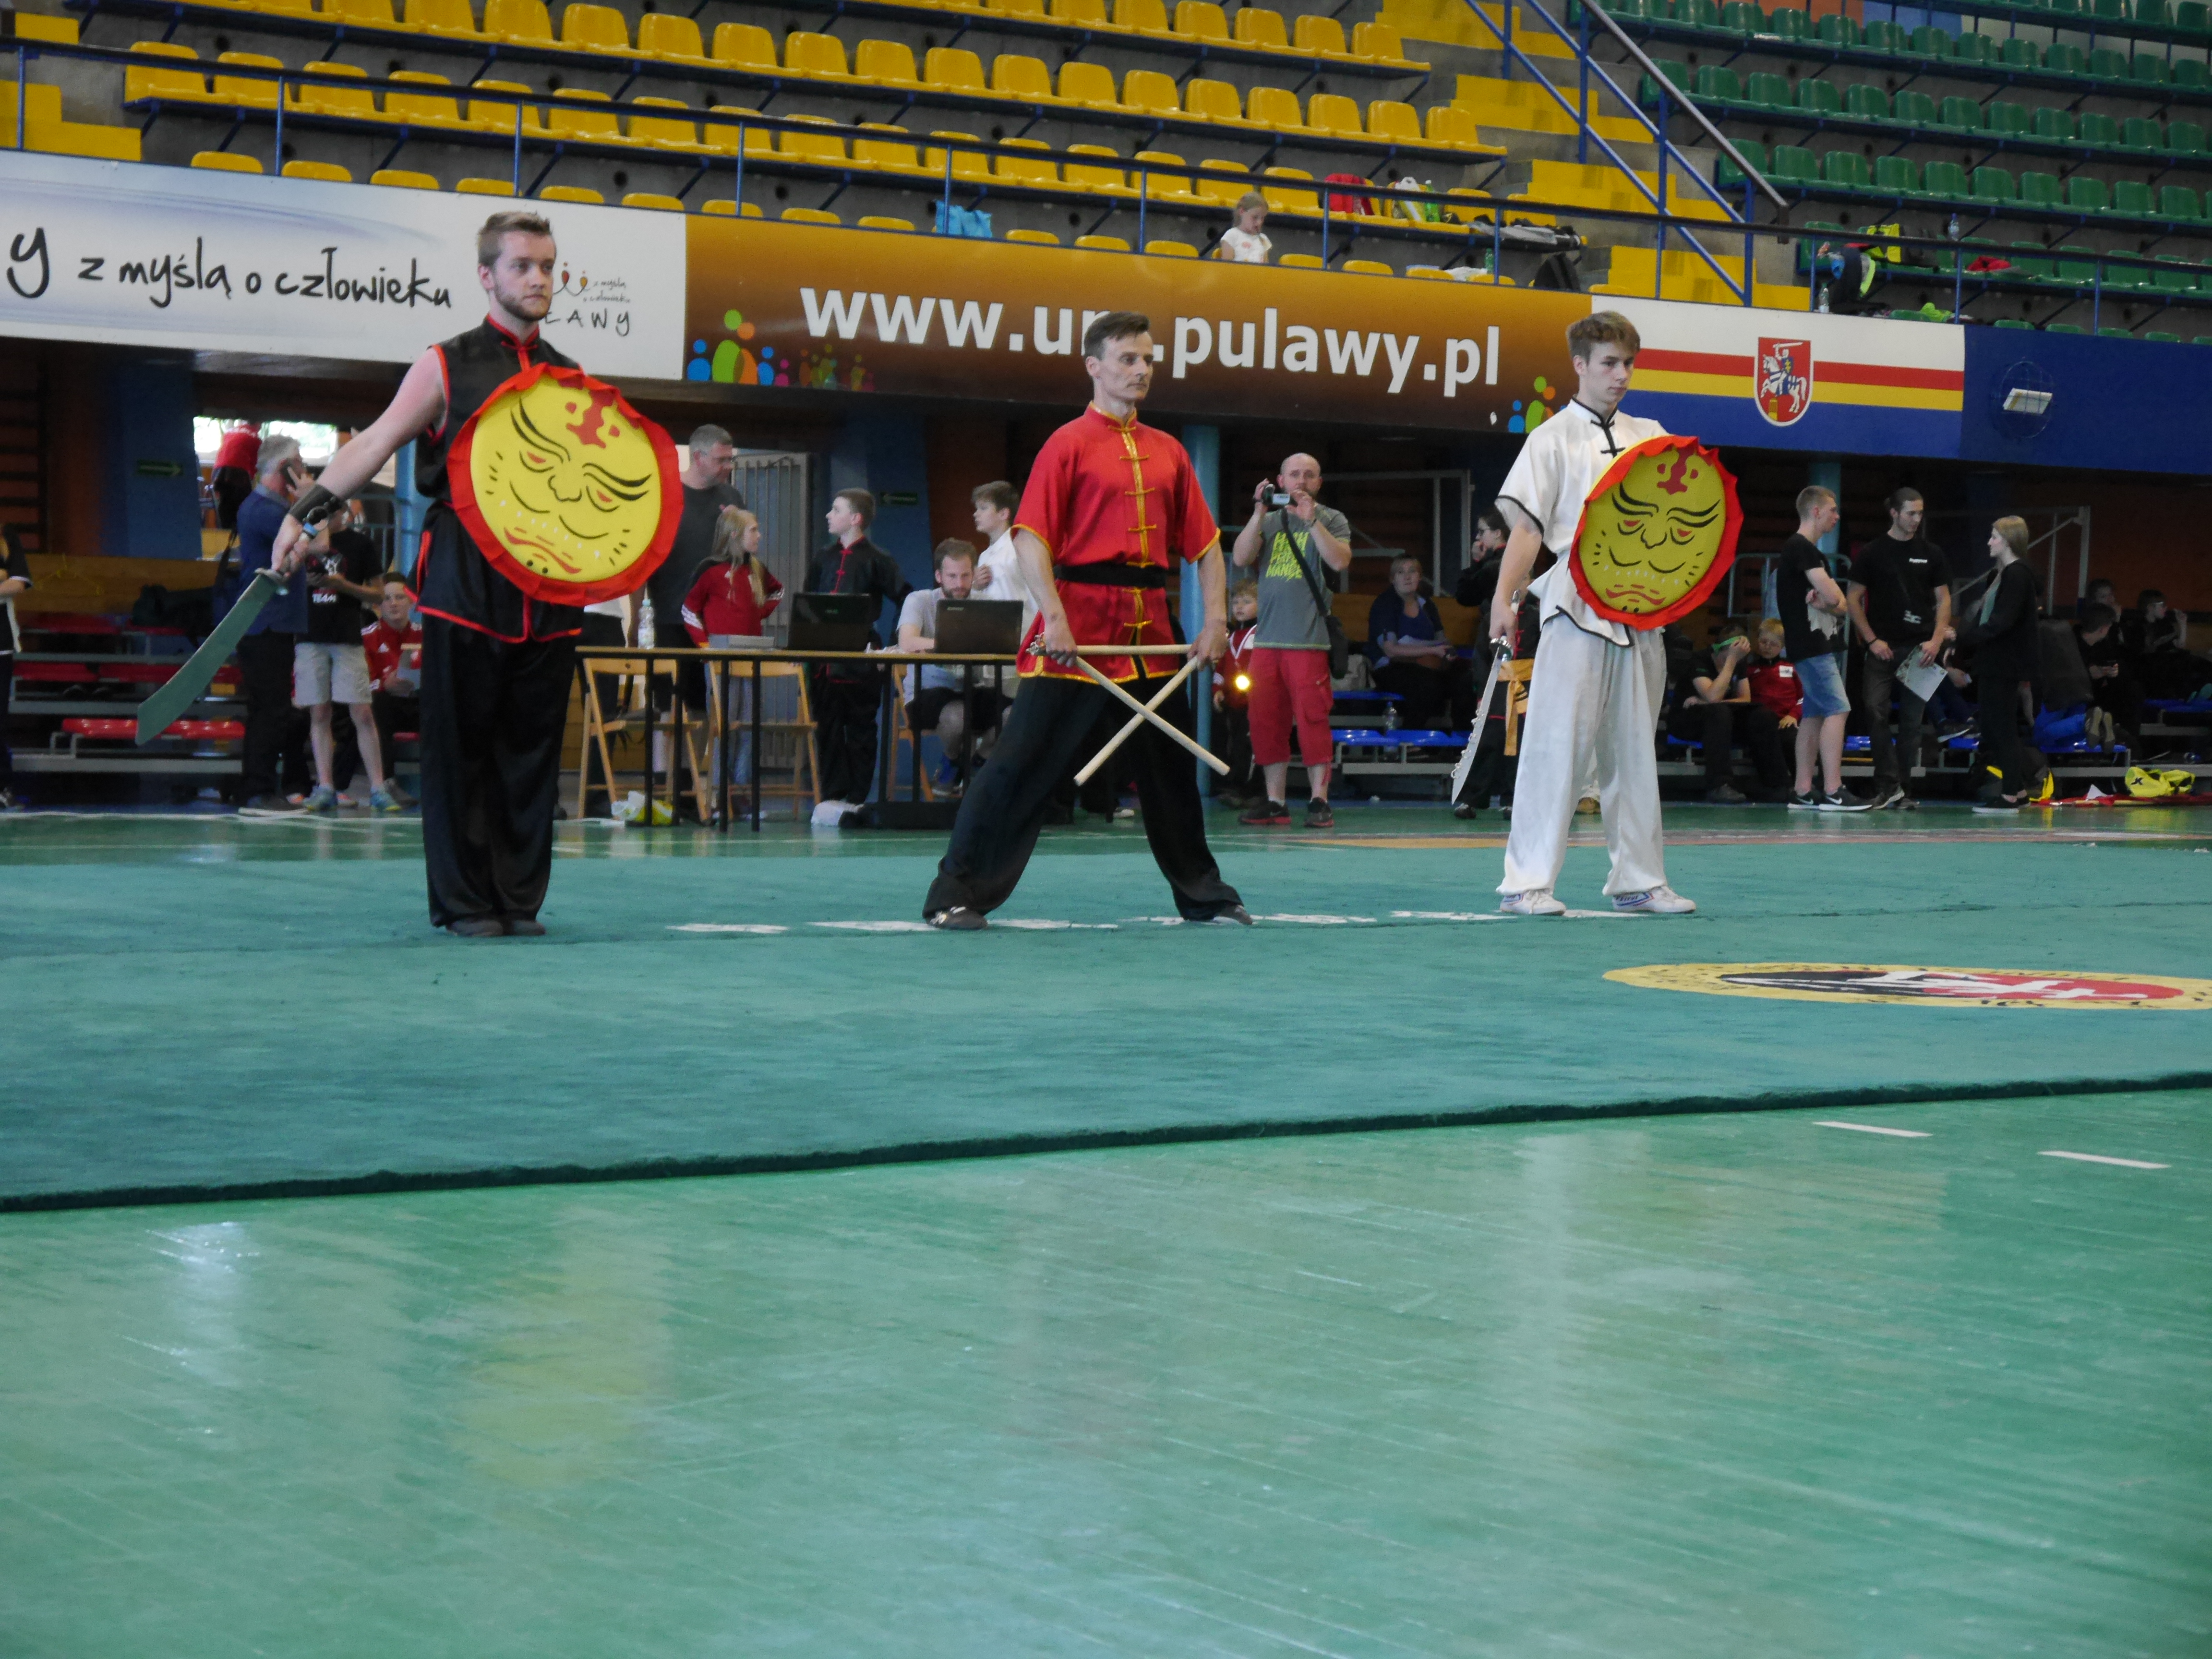 XXII Międzynarodowe Mistrzostwa Polski Wushu Puławy (3-5.06.2016)